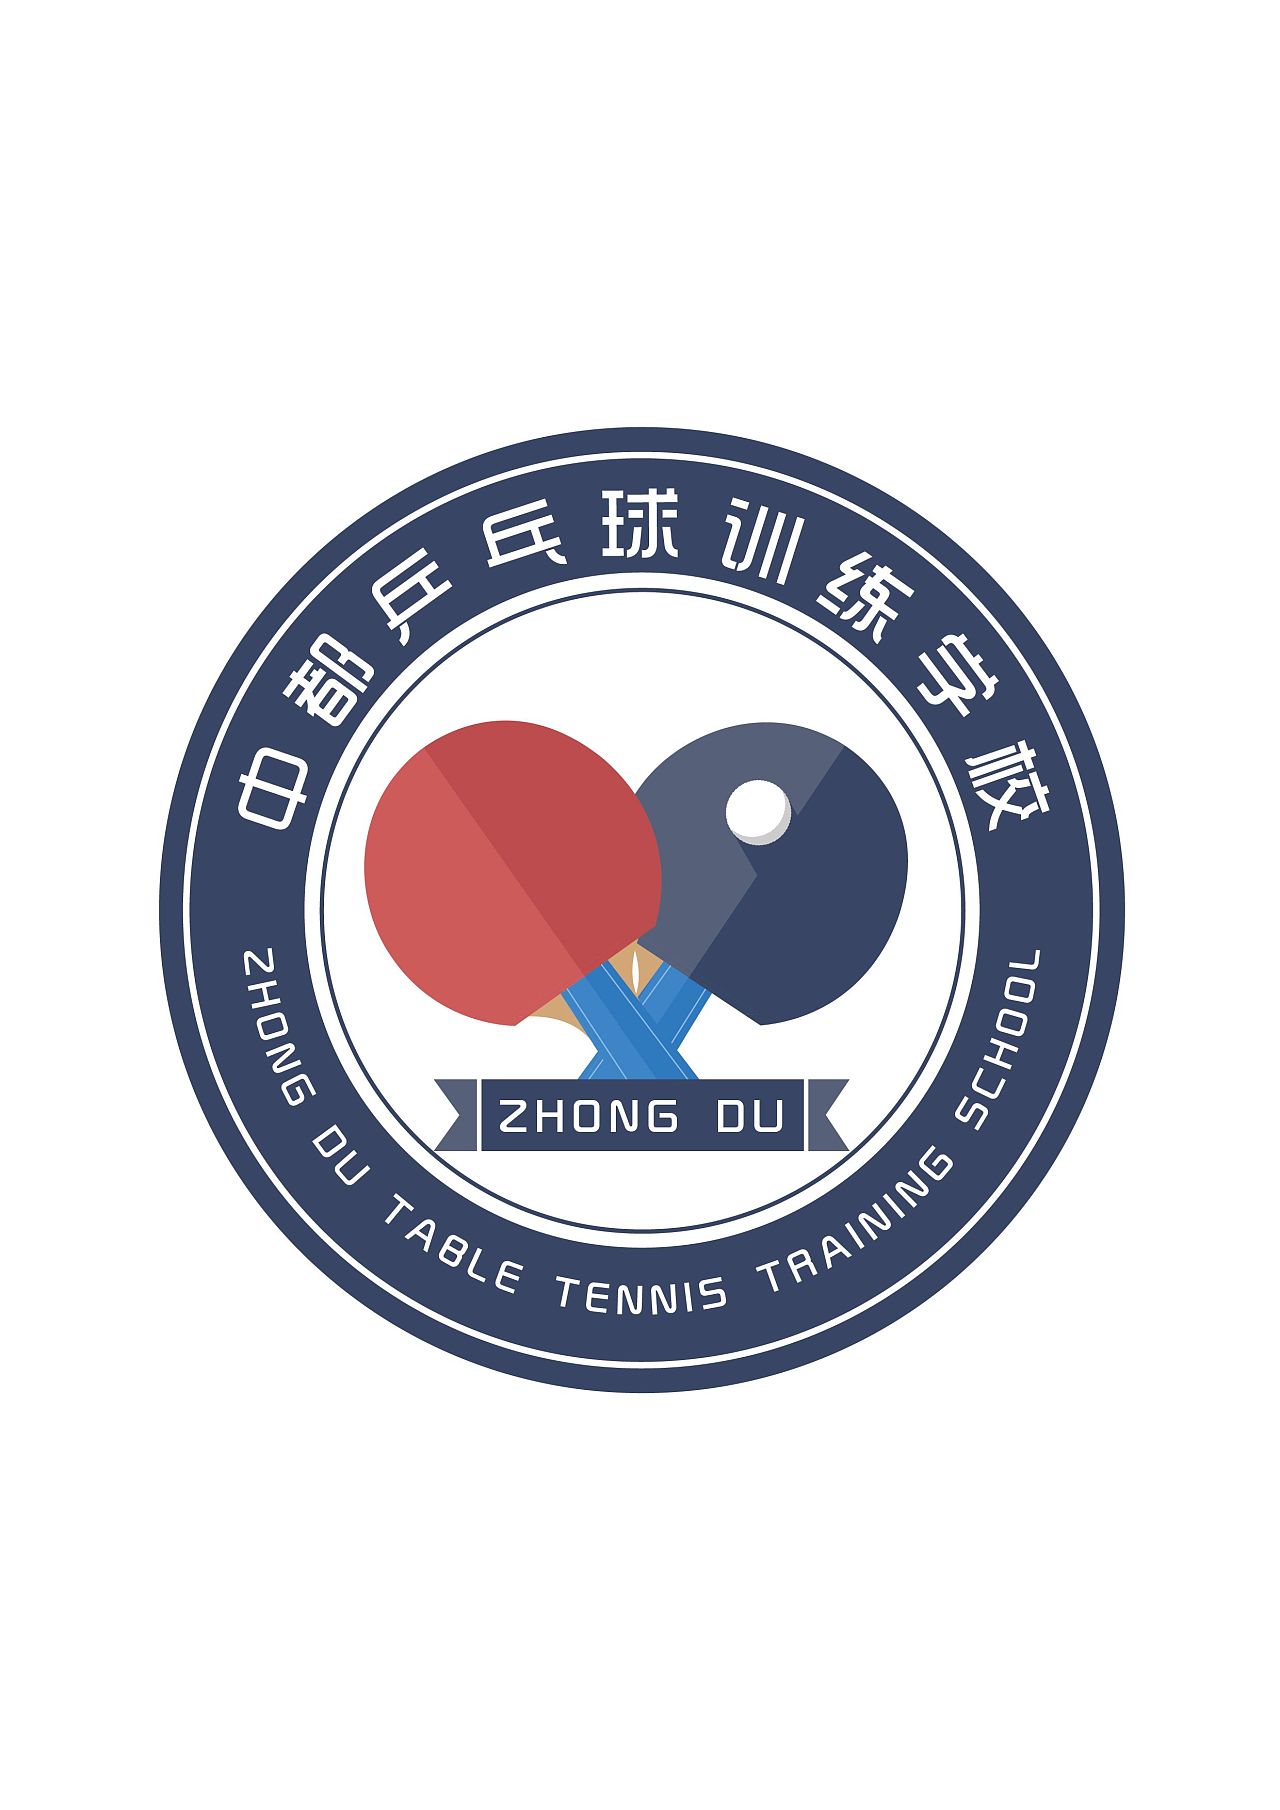 乒乓球社团logo图案图片